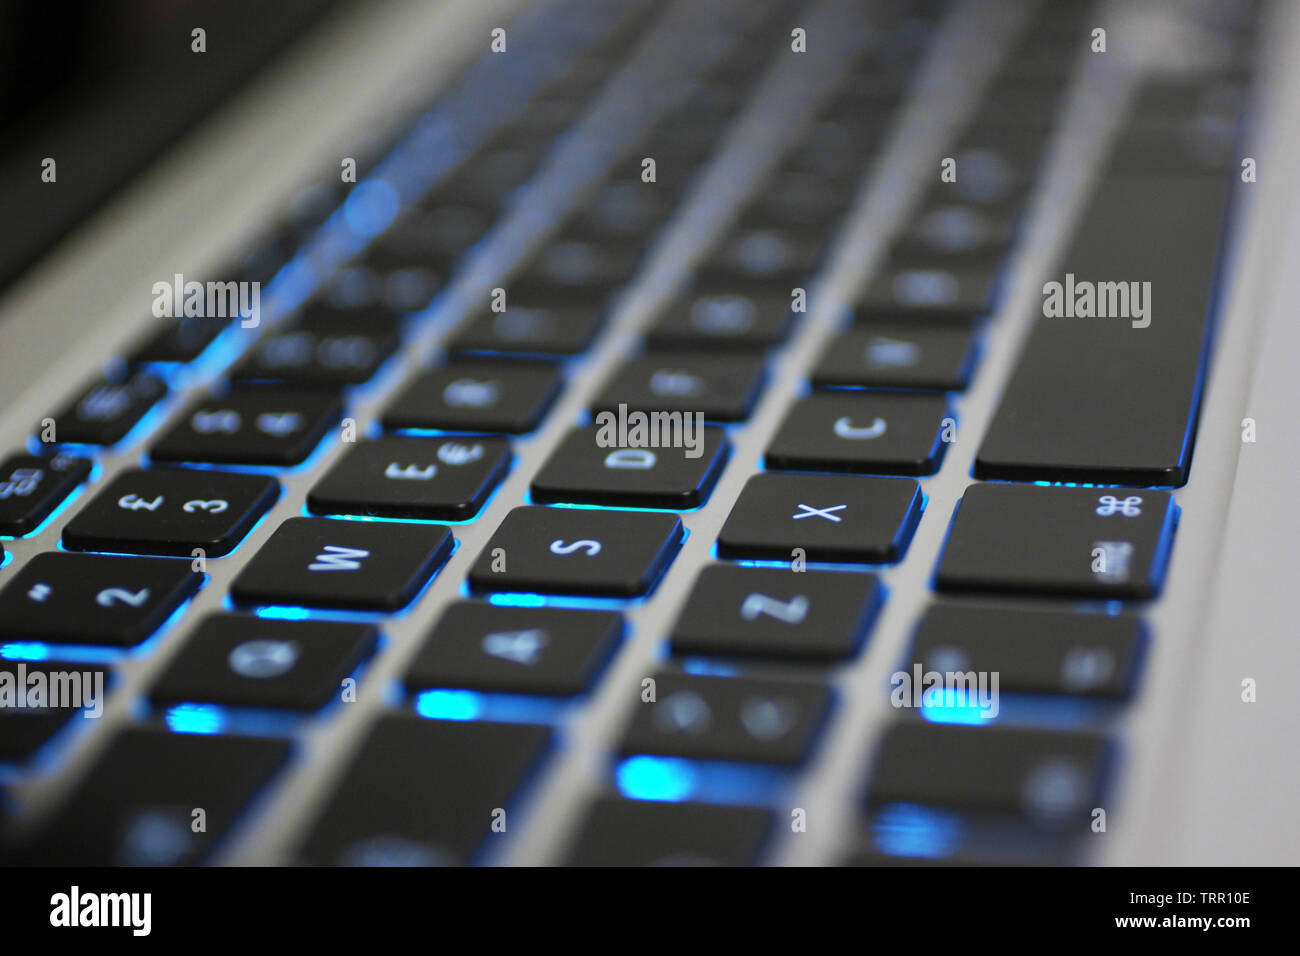 Tastiera portatile con retroilluminazione blu. Pulsanti vista dettagliata che mostra i dettagli di nero, lettere in bianco e argento corpo. Foto Stock